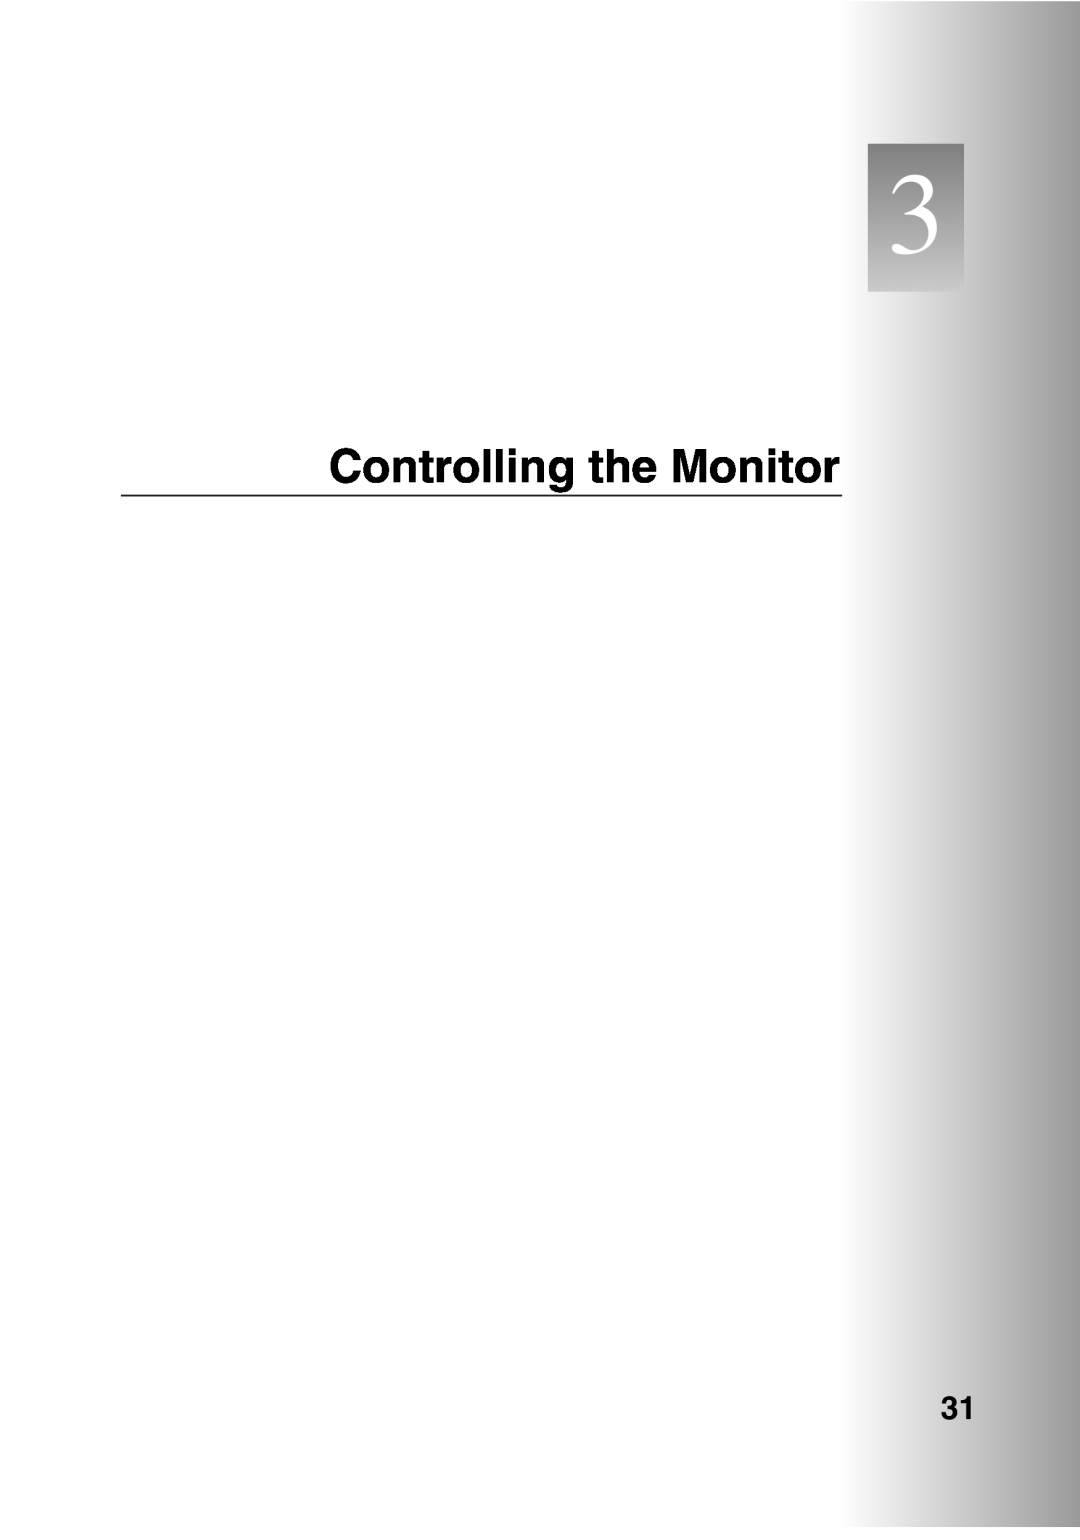 Sanyo POA-LN01 appendix Controlling the Monitor 